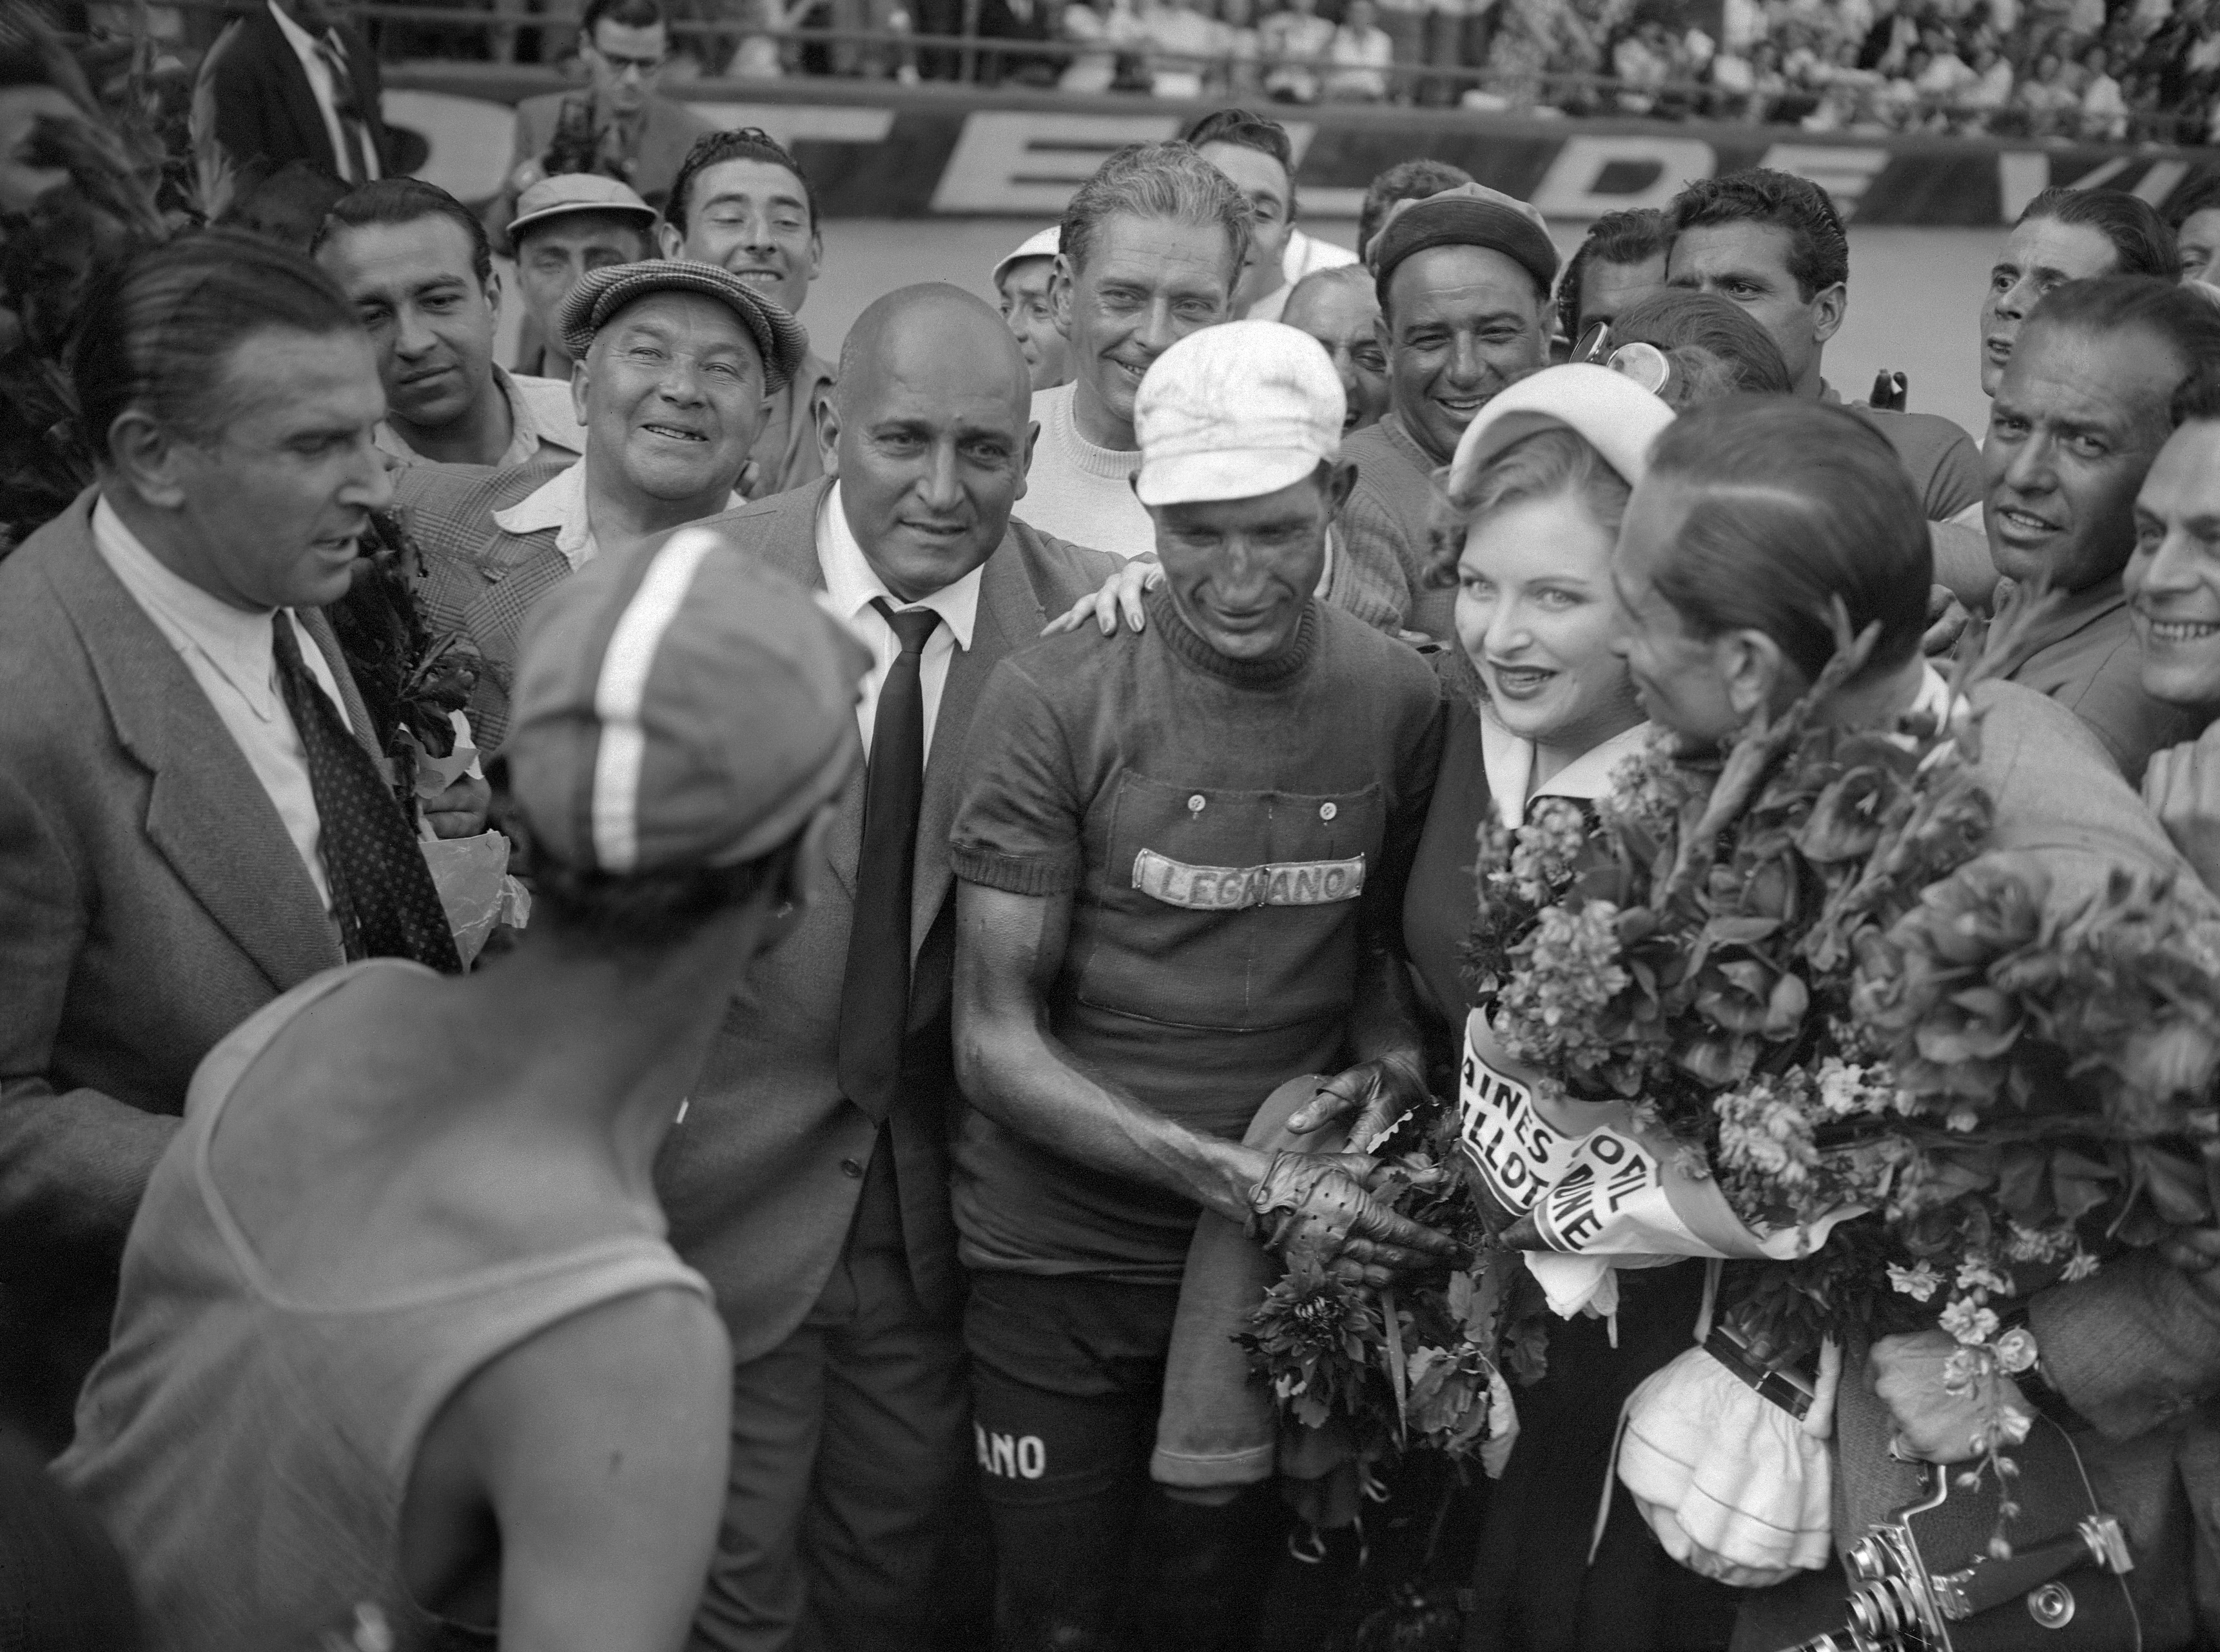 Luglio 1948: Bartali è acclamato a Parigi per la sua seconda vittoria al Tour de France. Il giorno prima dell'ultima tappa, il 14 luglio, uno studente di destra ferisce con un colpo di pistola il segretario del Partito Comunista Palmiro Togliatti, ricoverato in fin di vita. Il paese è sull'orlo di una guerra civile e la vittoria di Bartali il giorno dopo riporta entusiasmo e serenità in tutto il paese